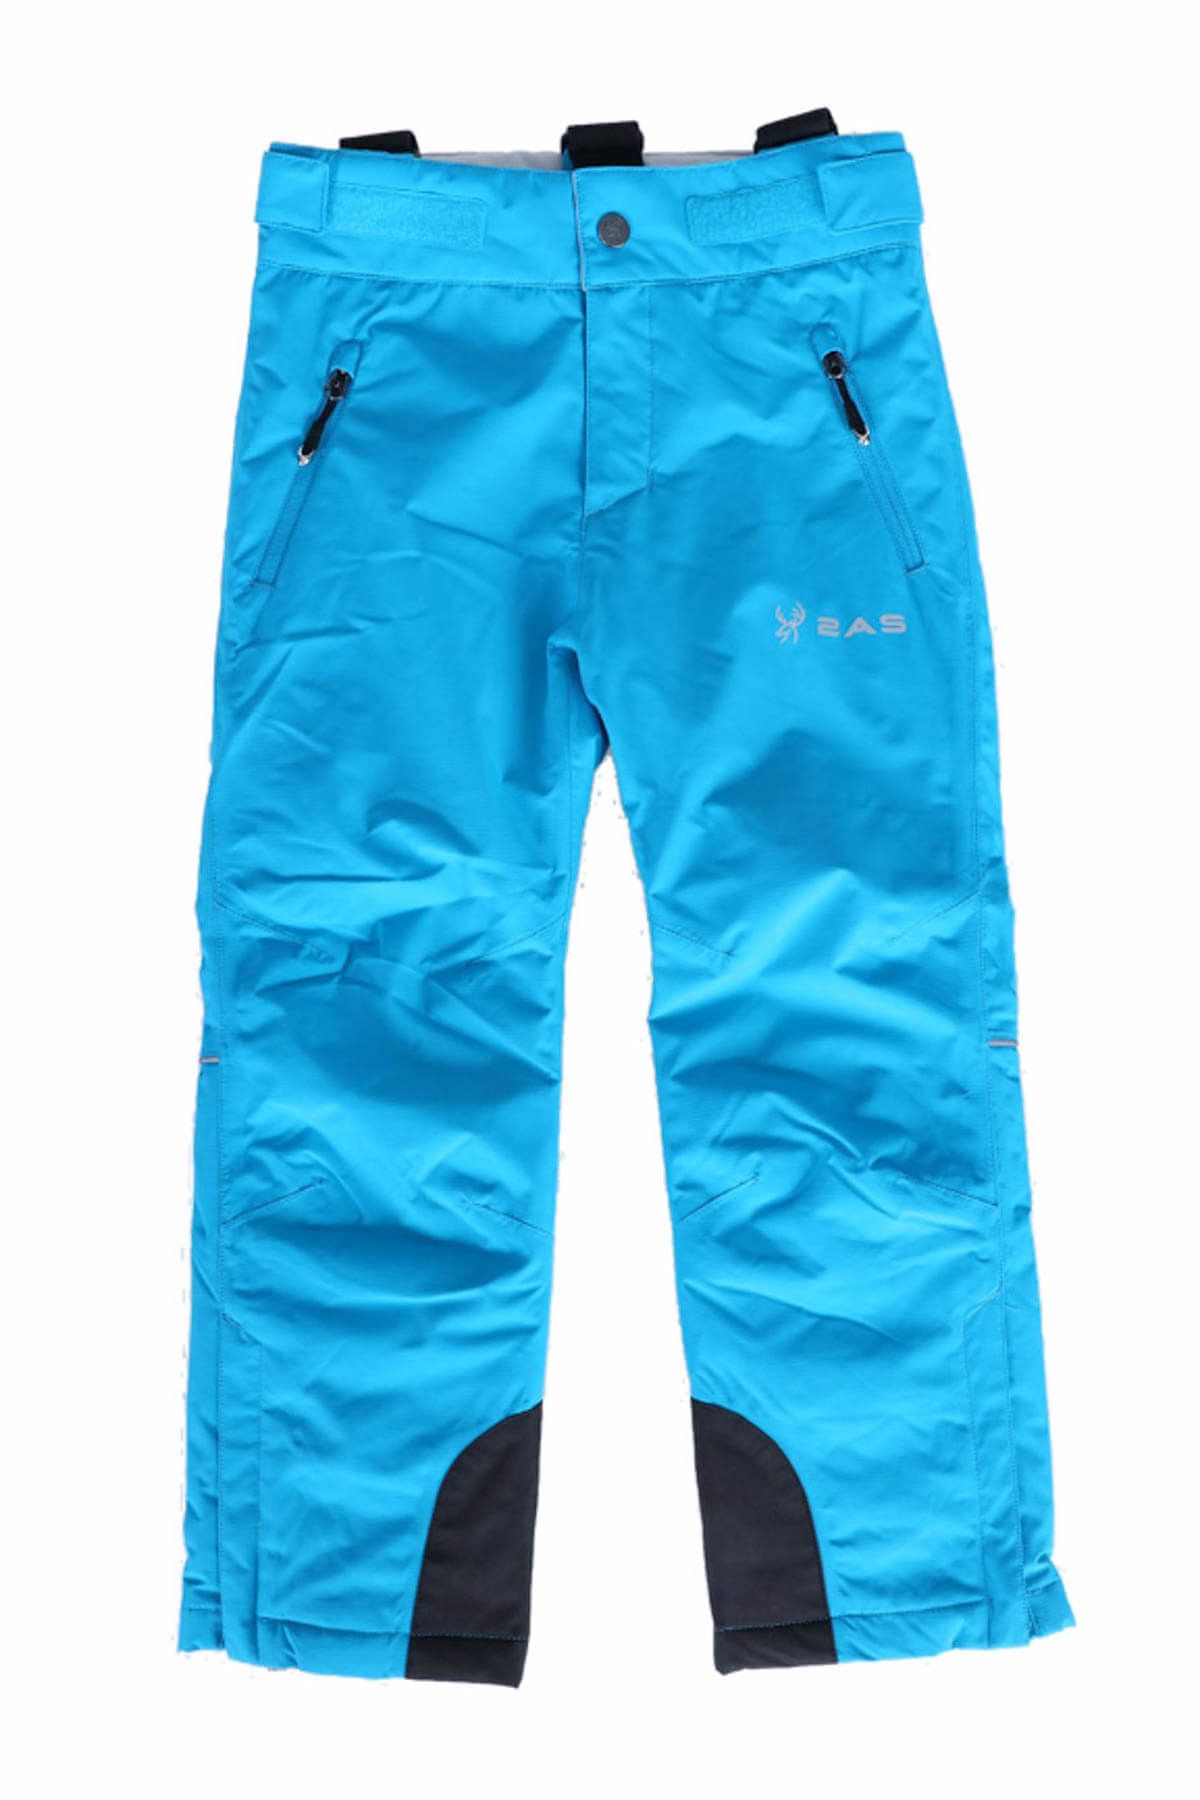 2AS Unisex Çocuk Mavi Spor Pantalon